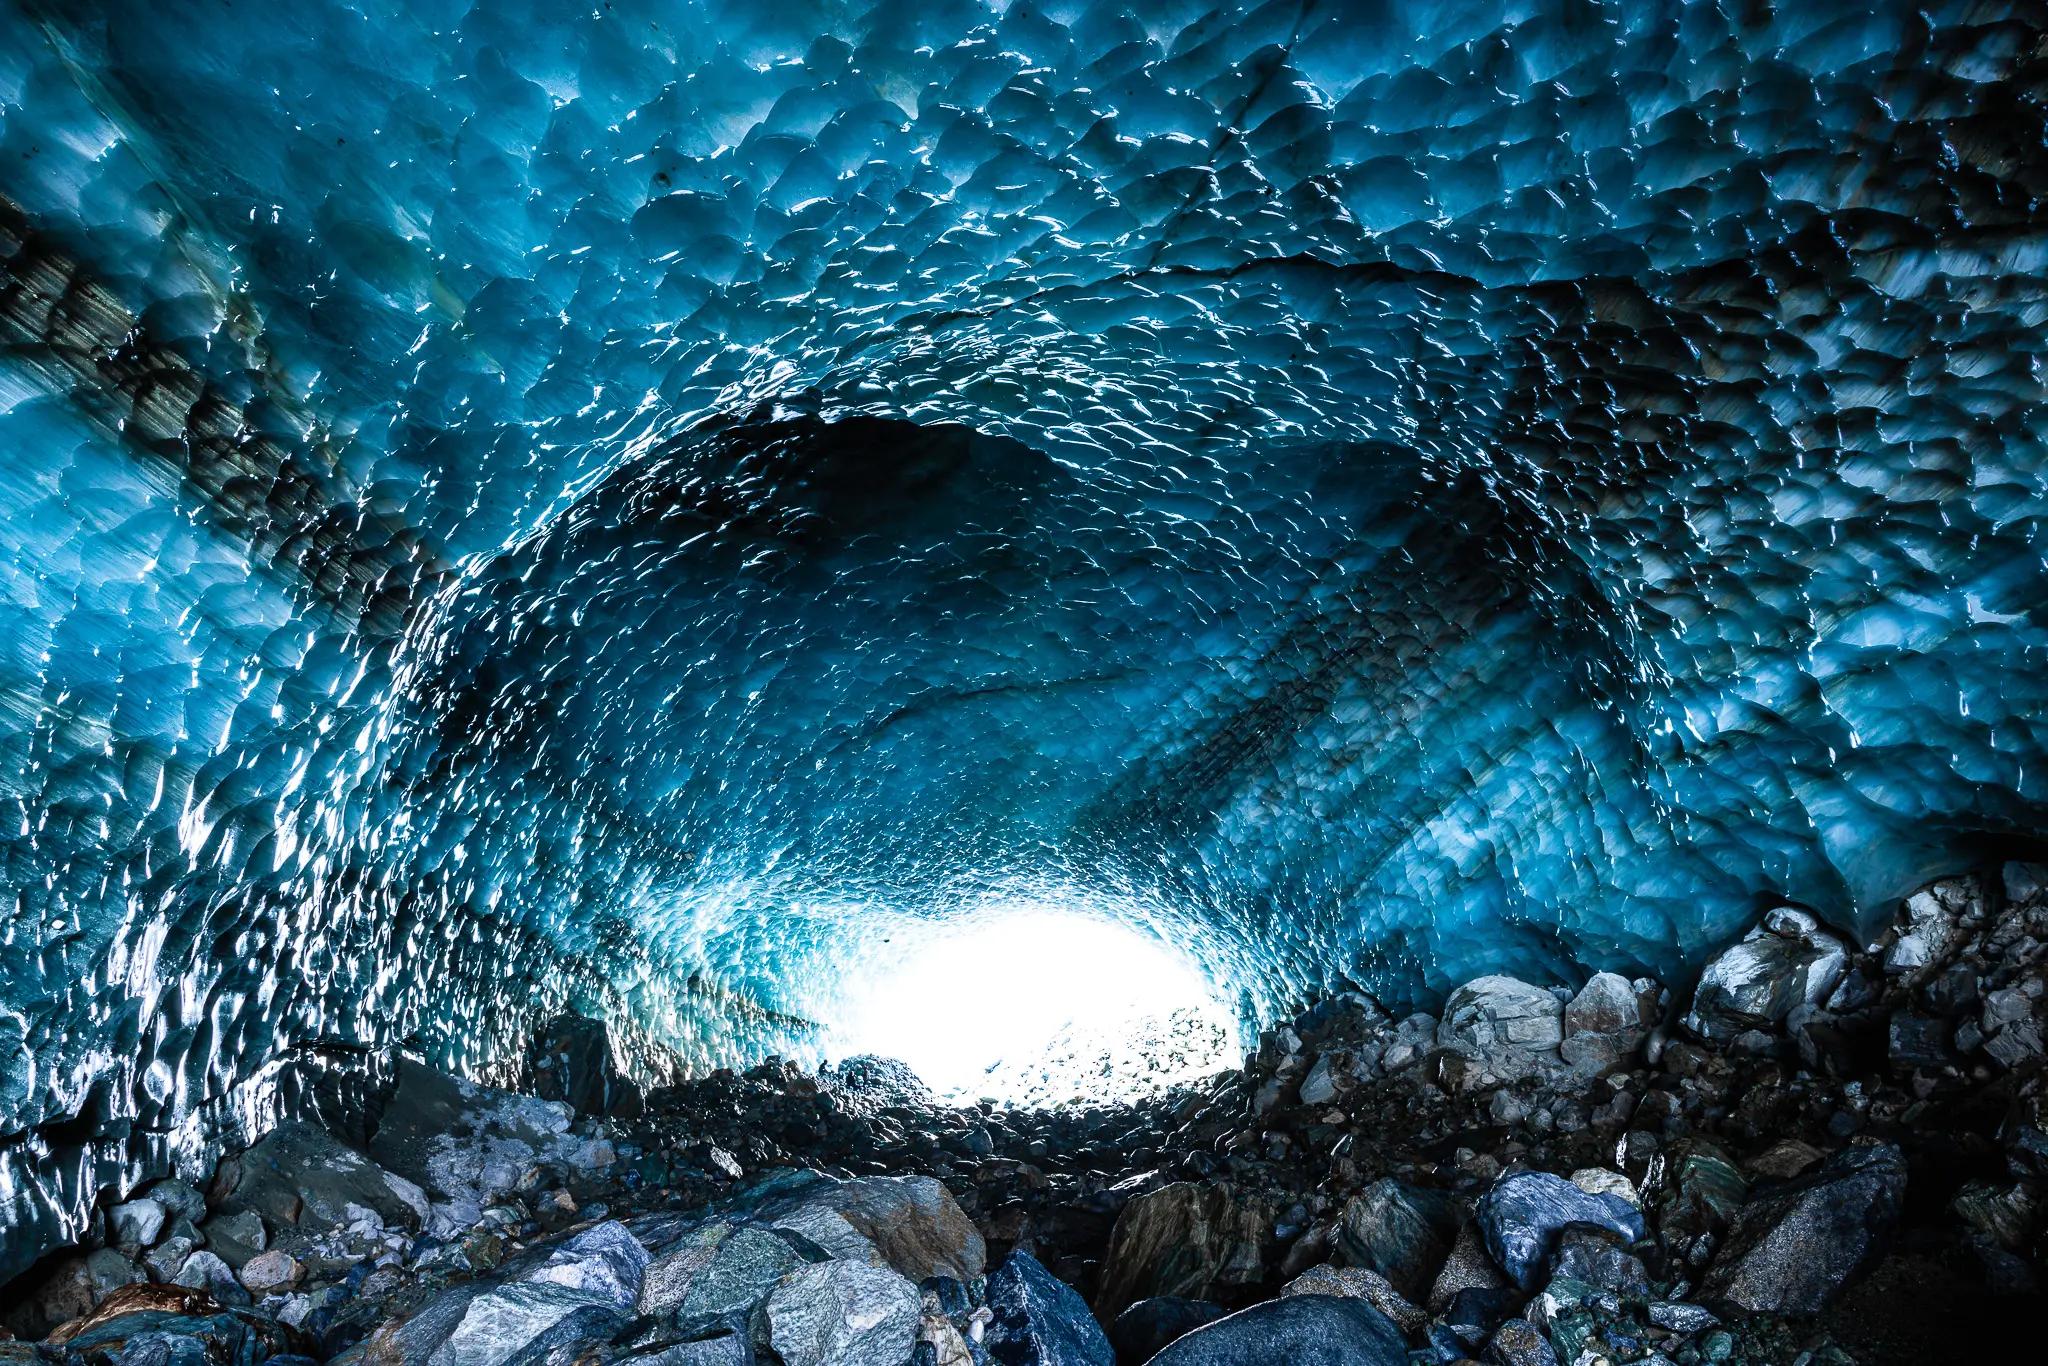 In the glacier cave